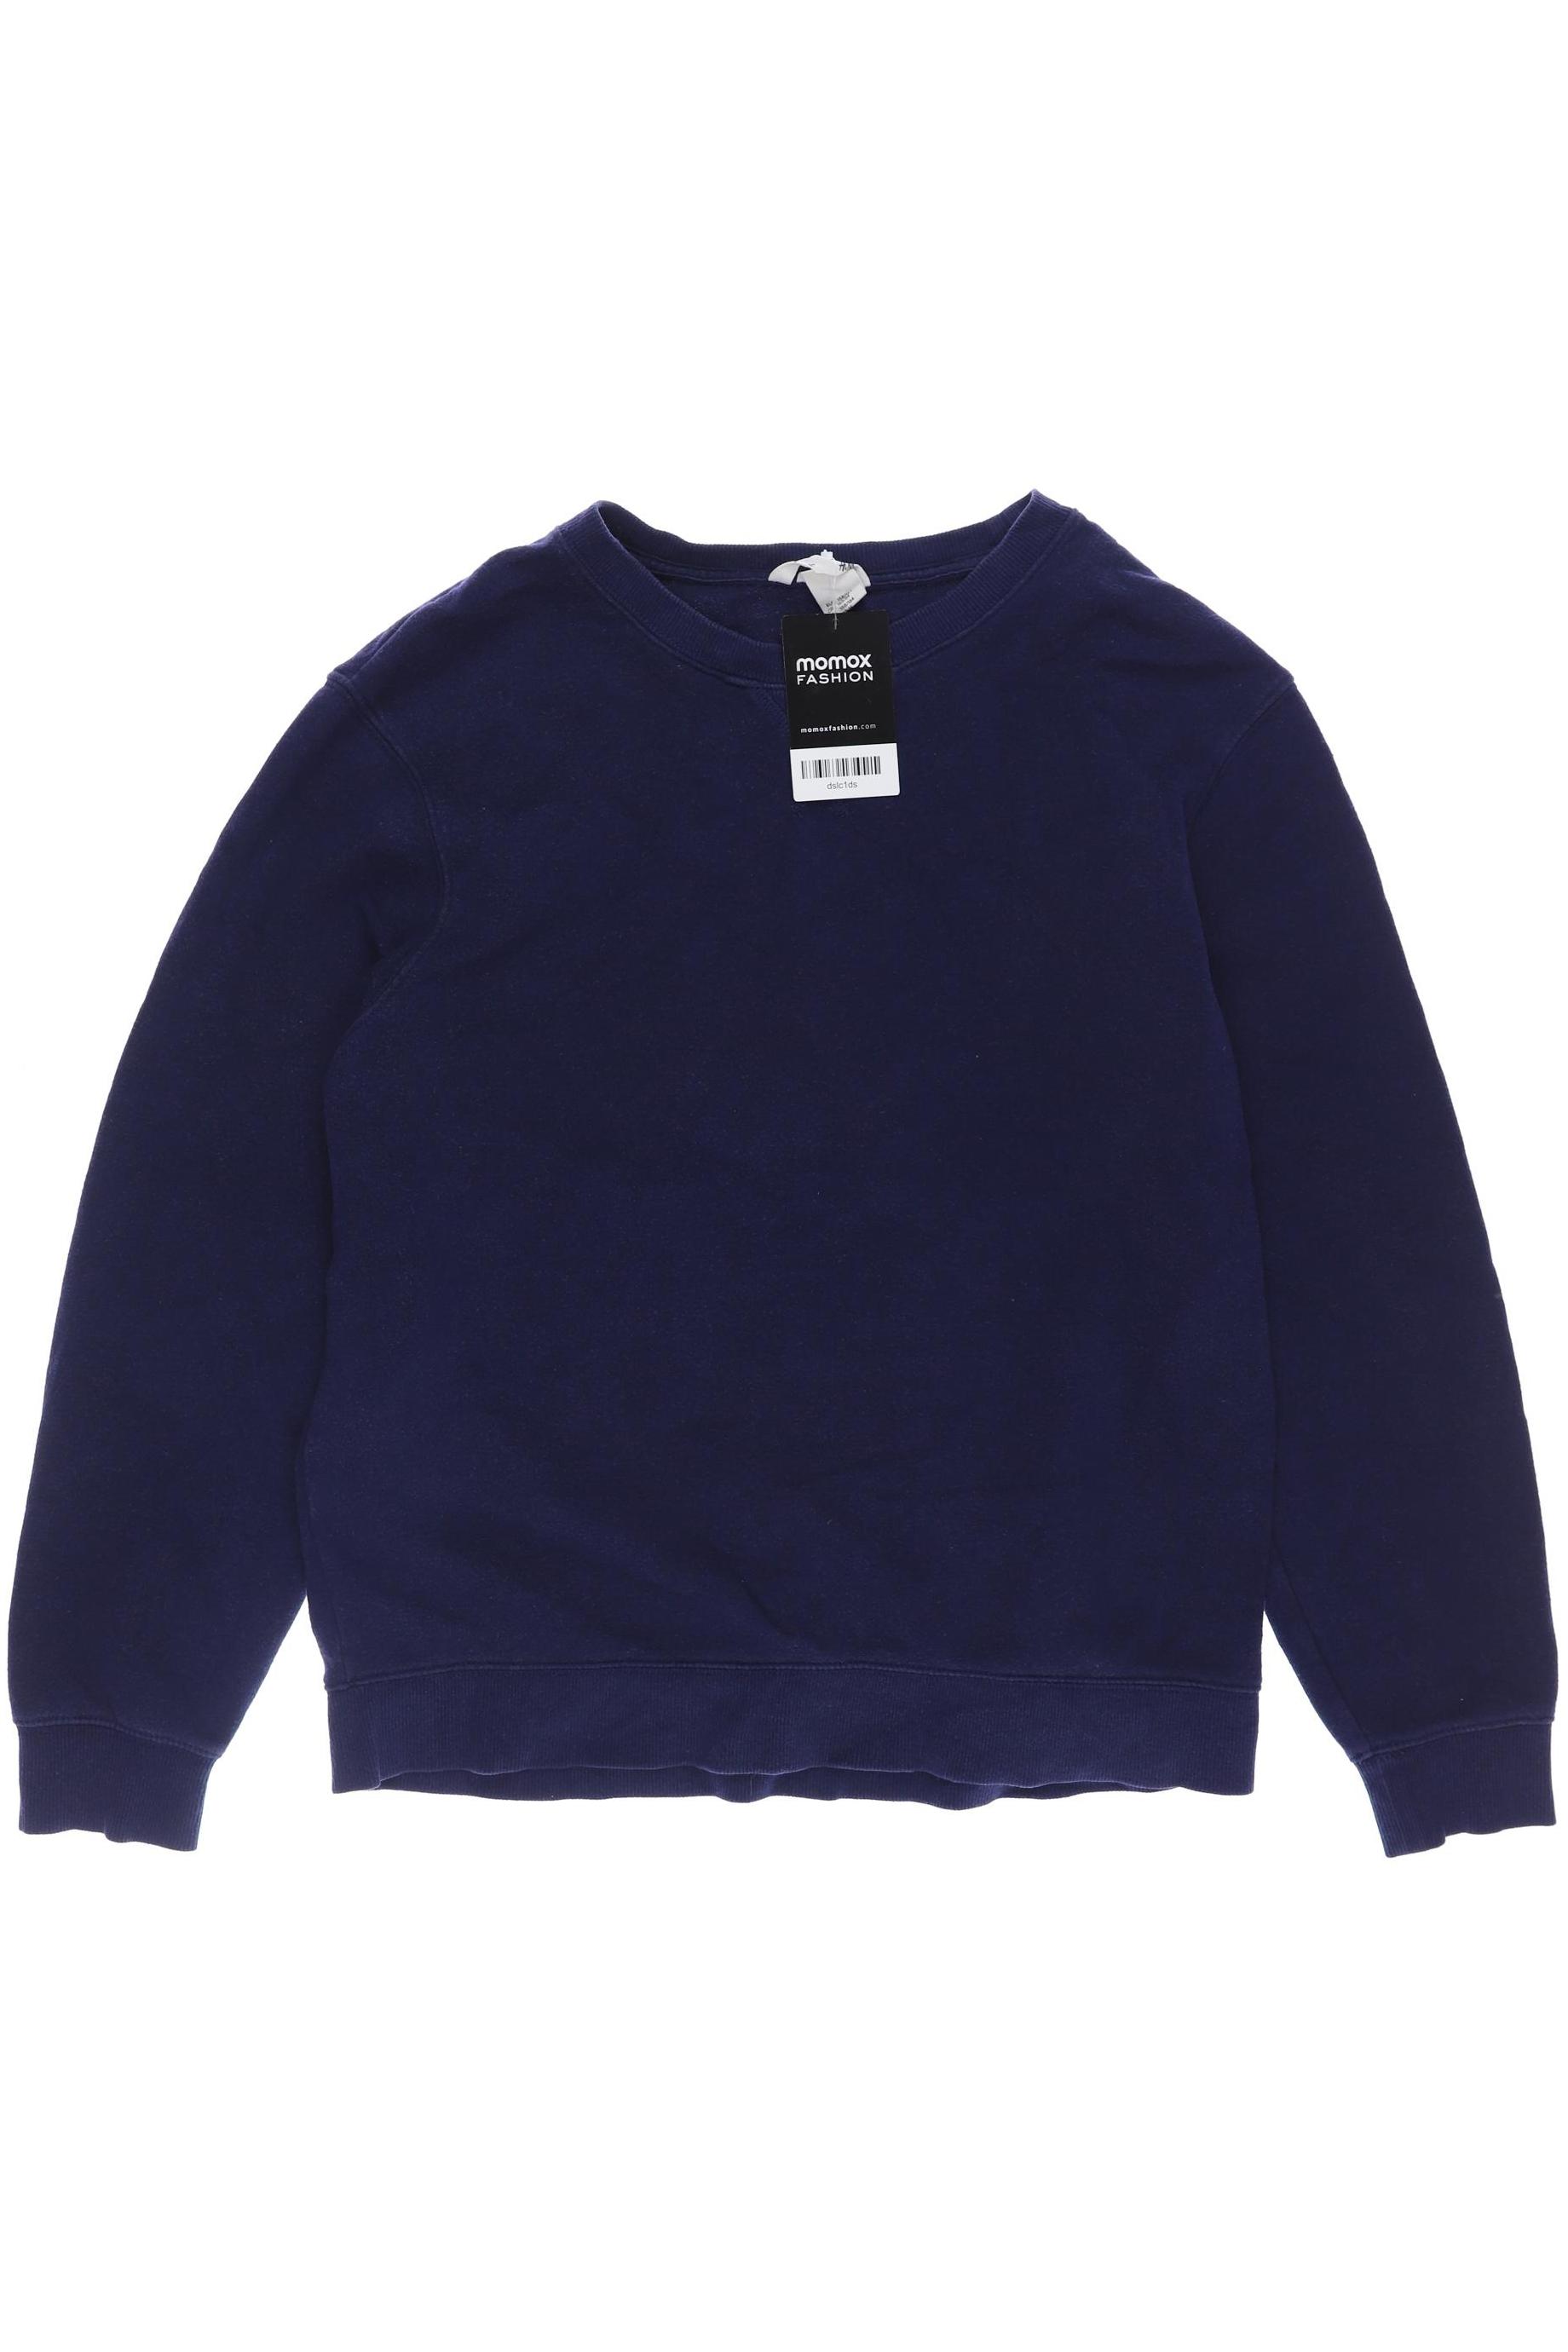 H&M Jungen Hoodies & Sweater, marineblau von H&M